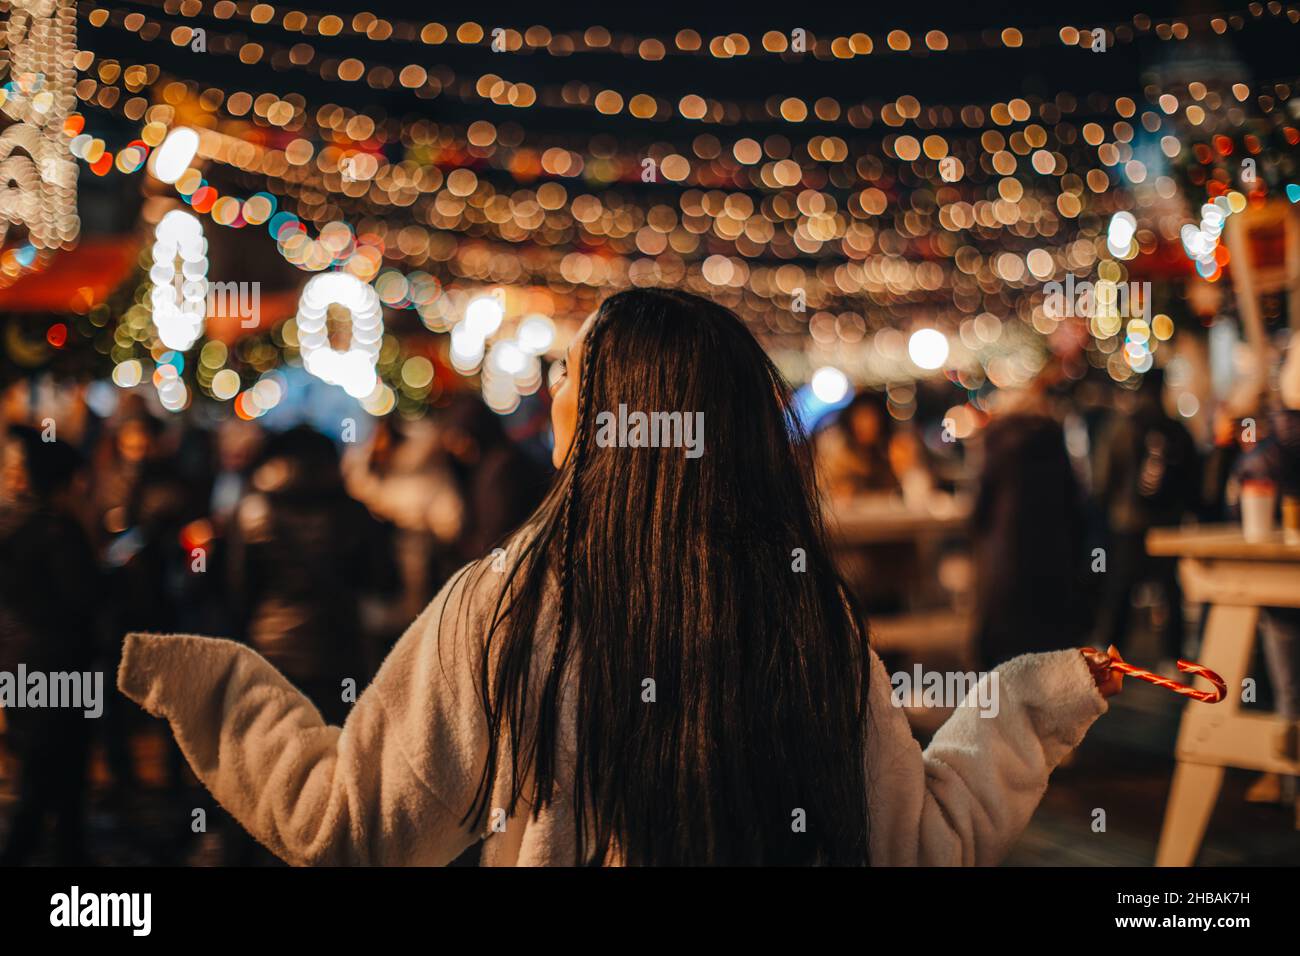 Jeune femme brune en fourrure blanche d'hiver au marché de Noël avec des lumières magiques dorées Banque D'Images